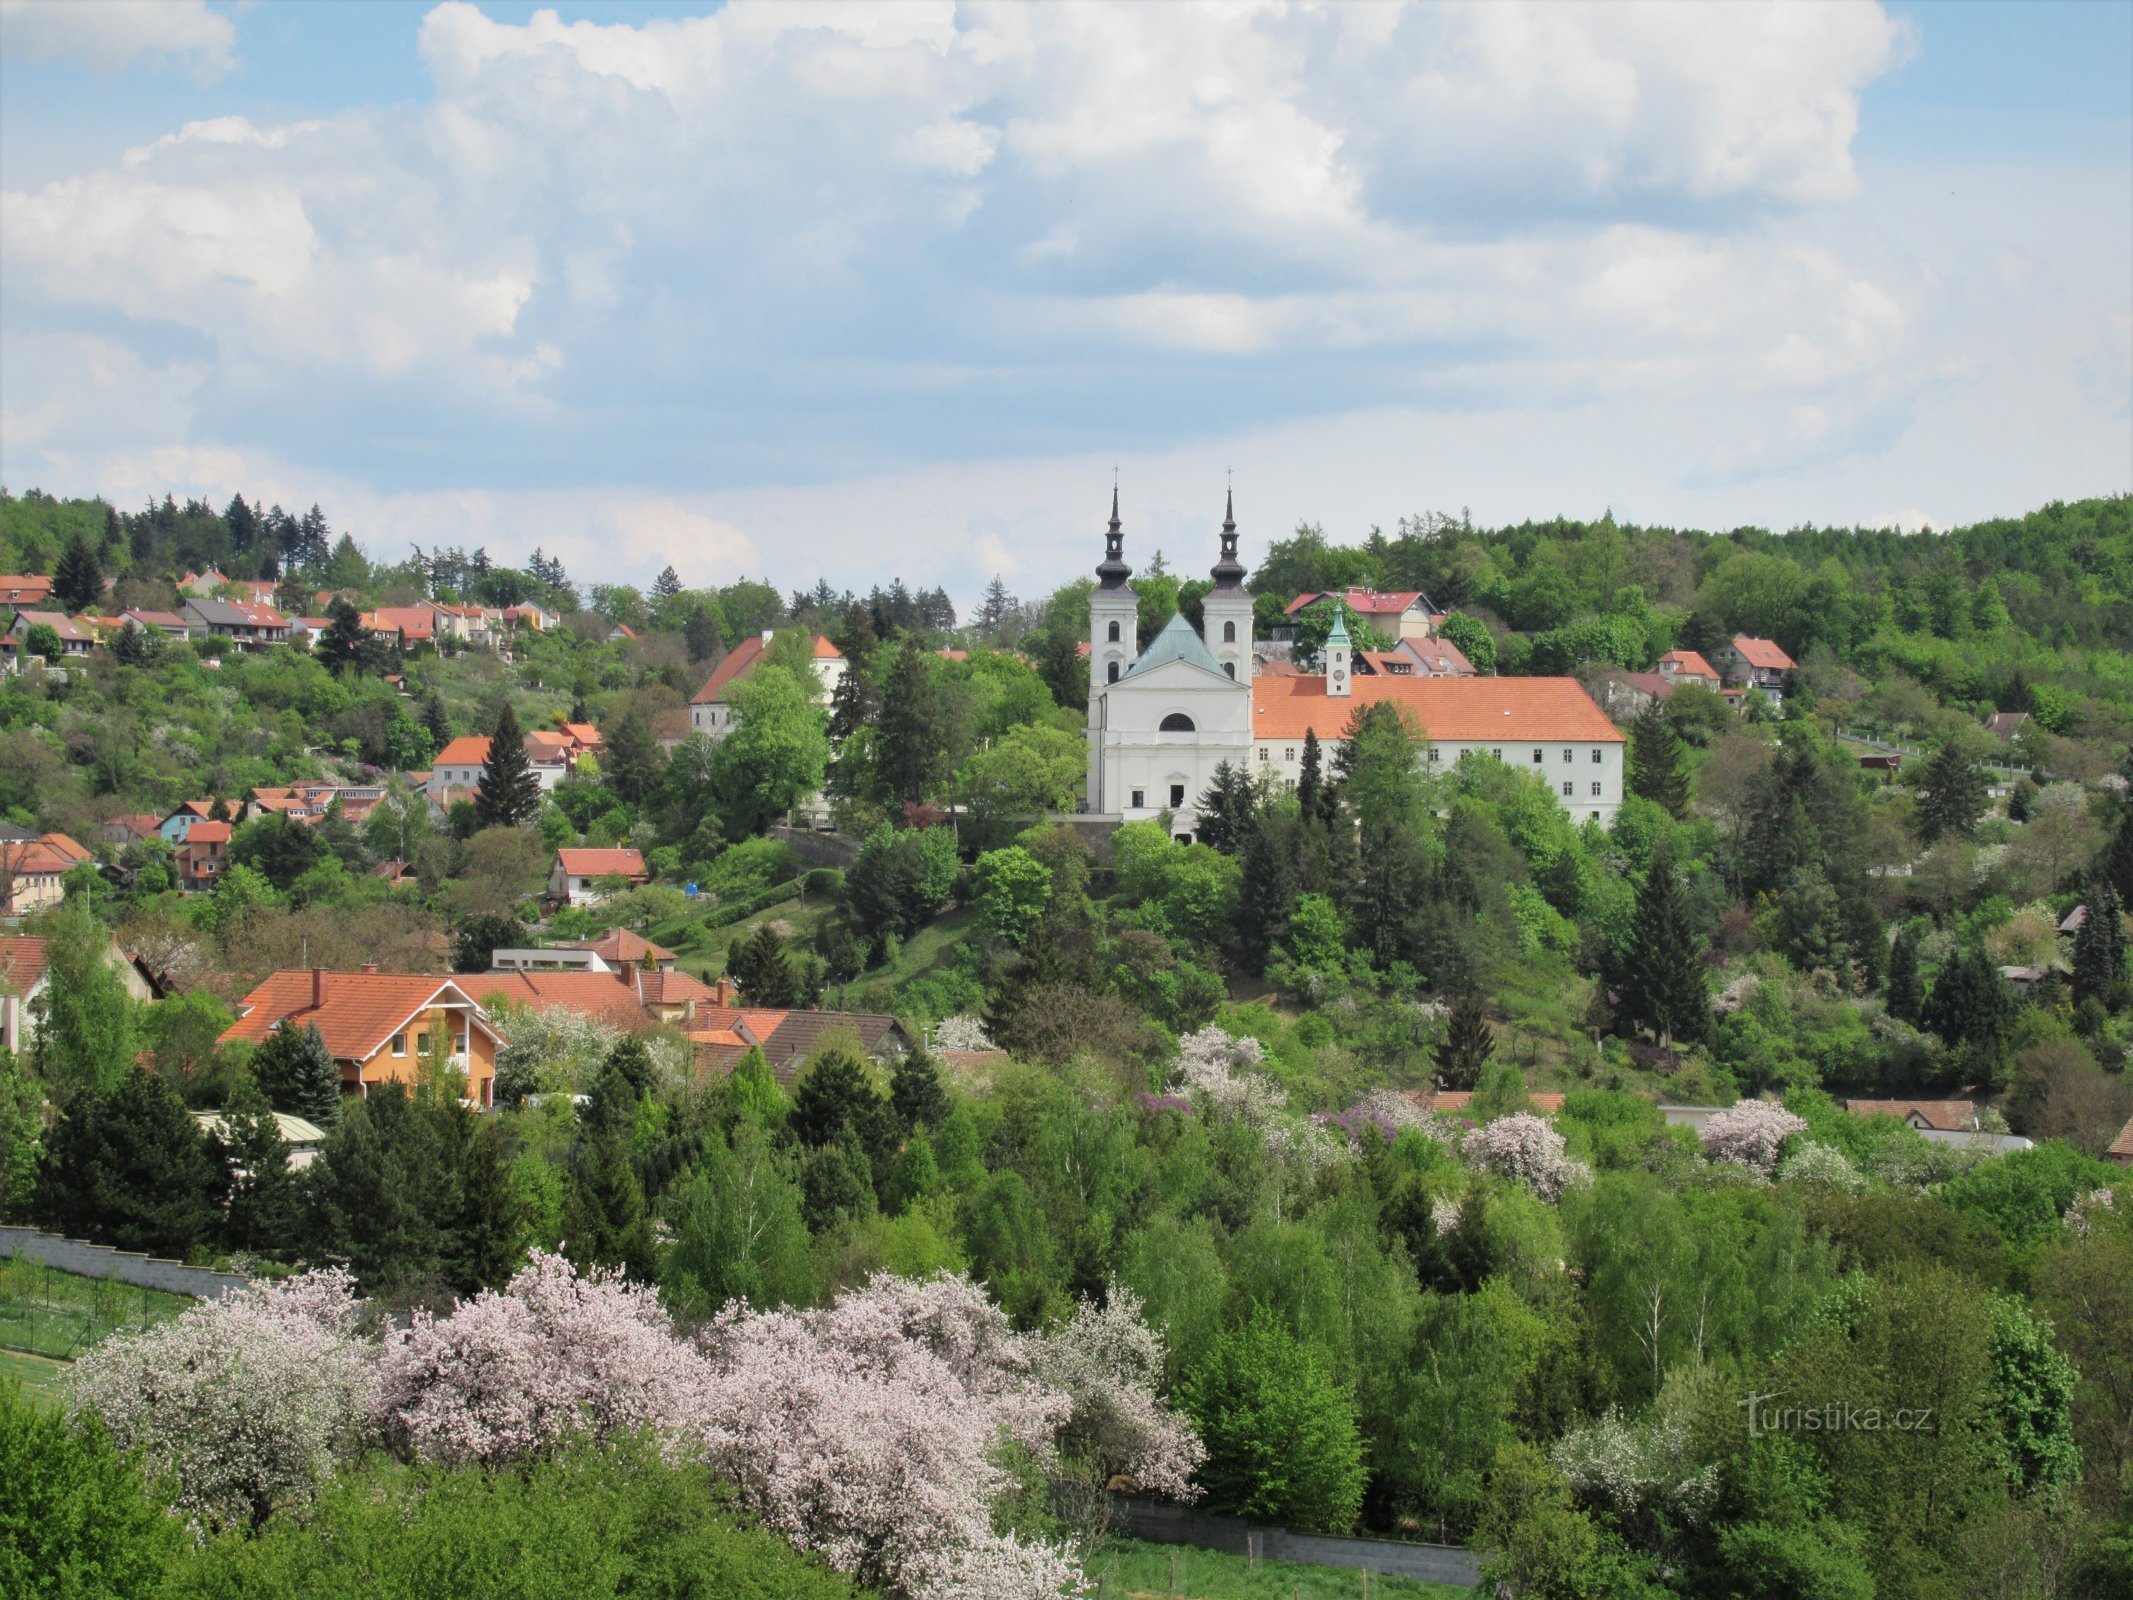 Vranov nær Brno - udsigt over landsbyen